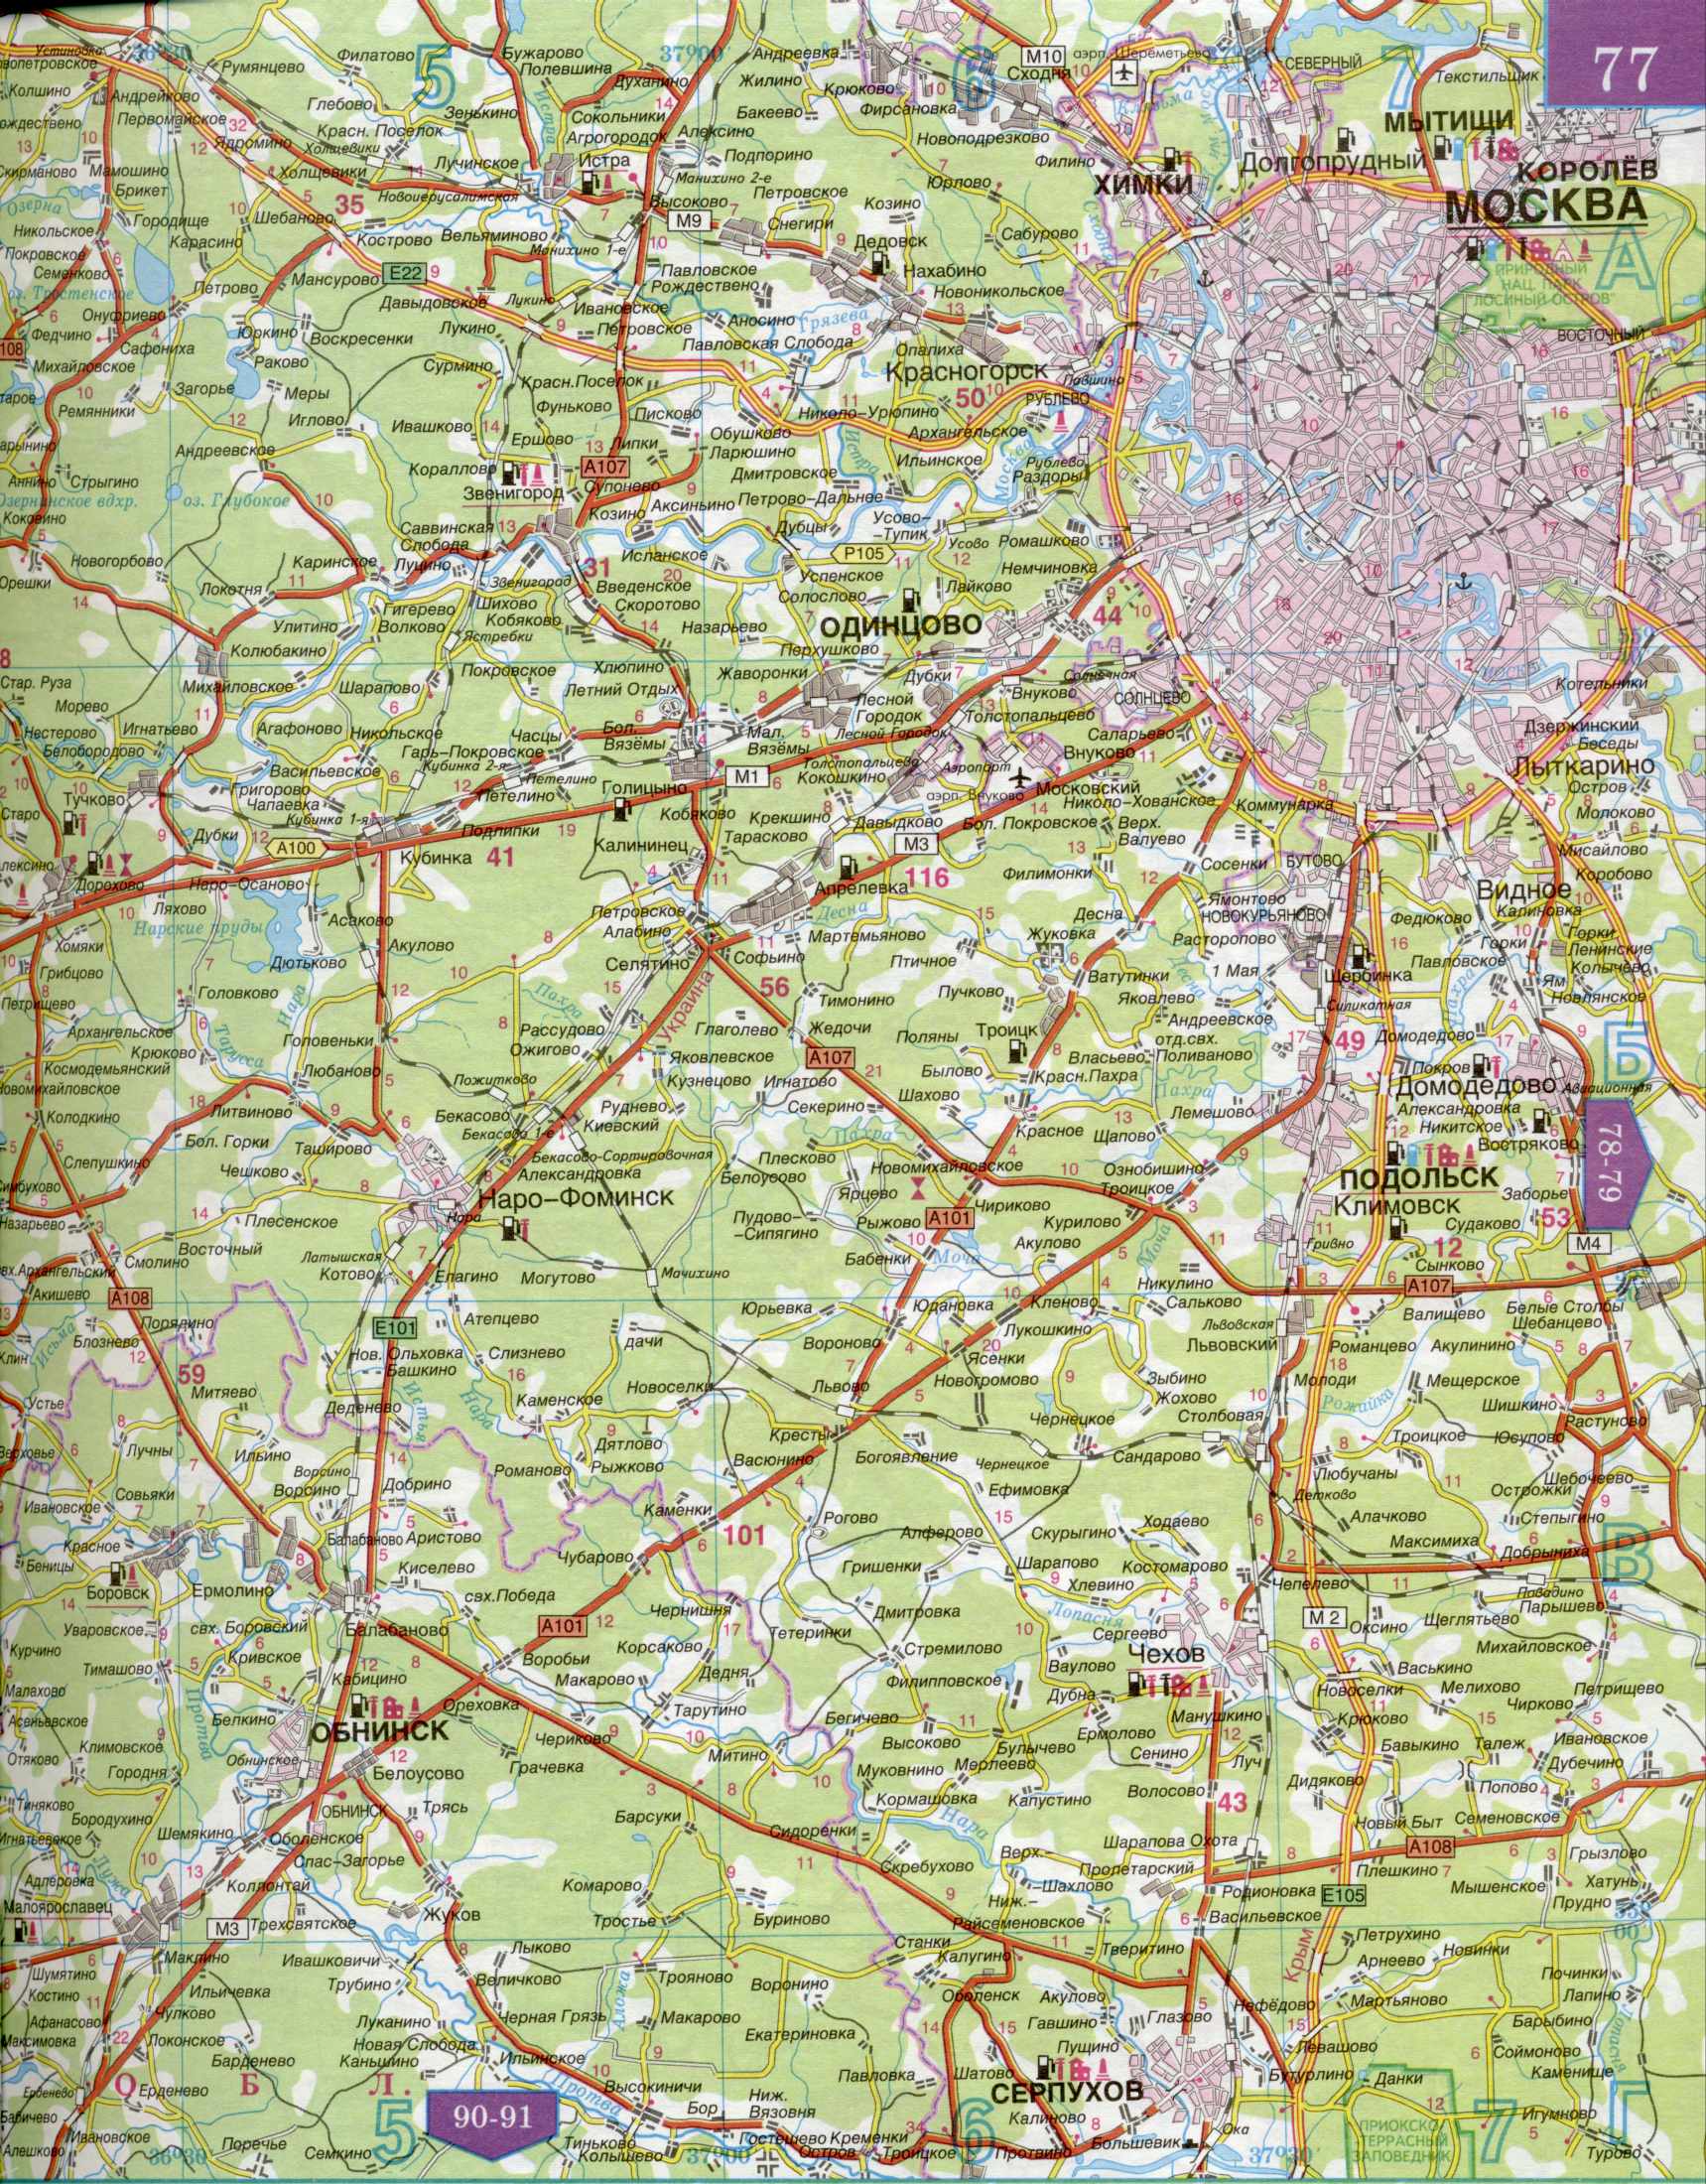 Карта автомобильных дорог Московской области 1см=5км. Подробная карта автомобильных дорог  - Московская область и прилегающие территории. Скачать бесплатно, B1 - 